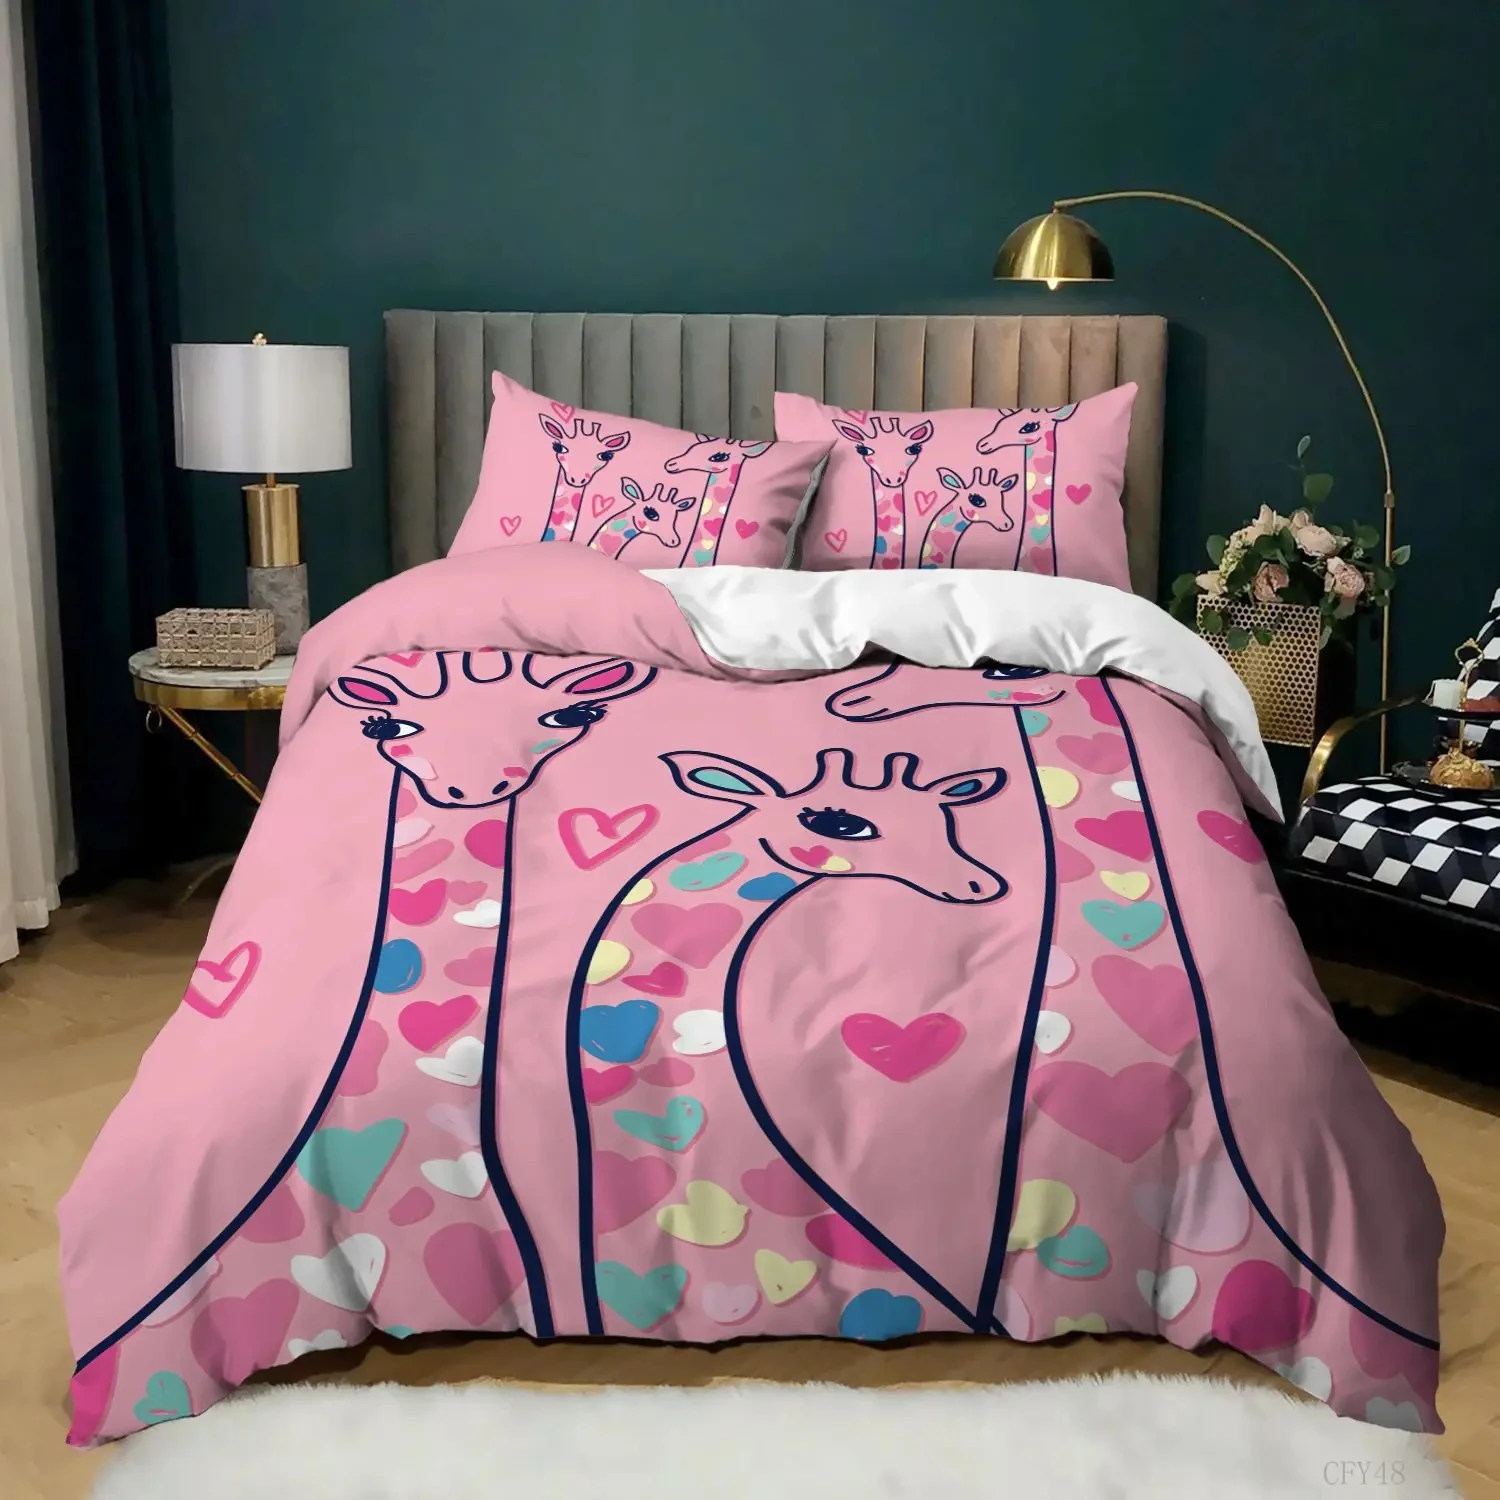 

Комплект постельного белья из 3 предметов с изображением жирафа, розового и белого цвета